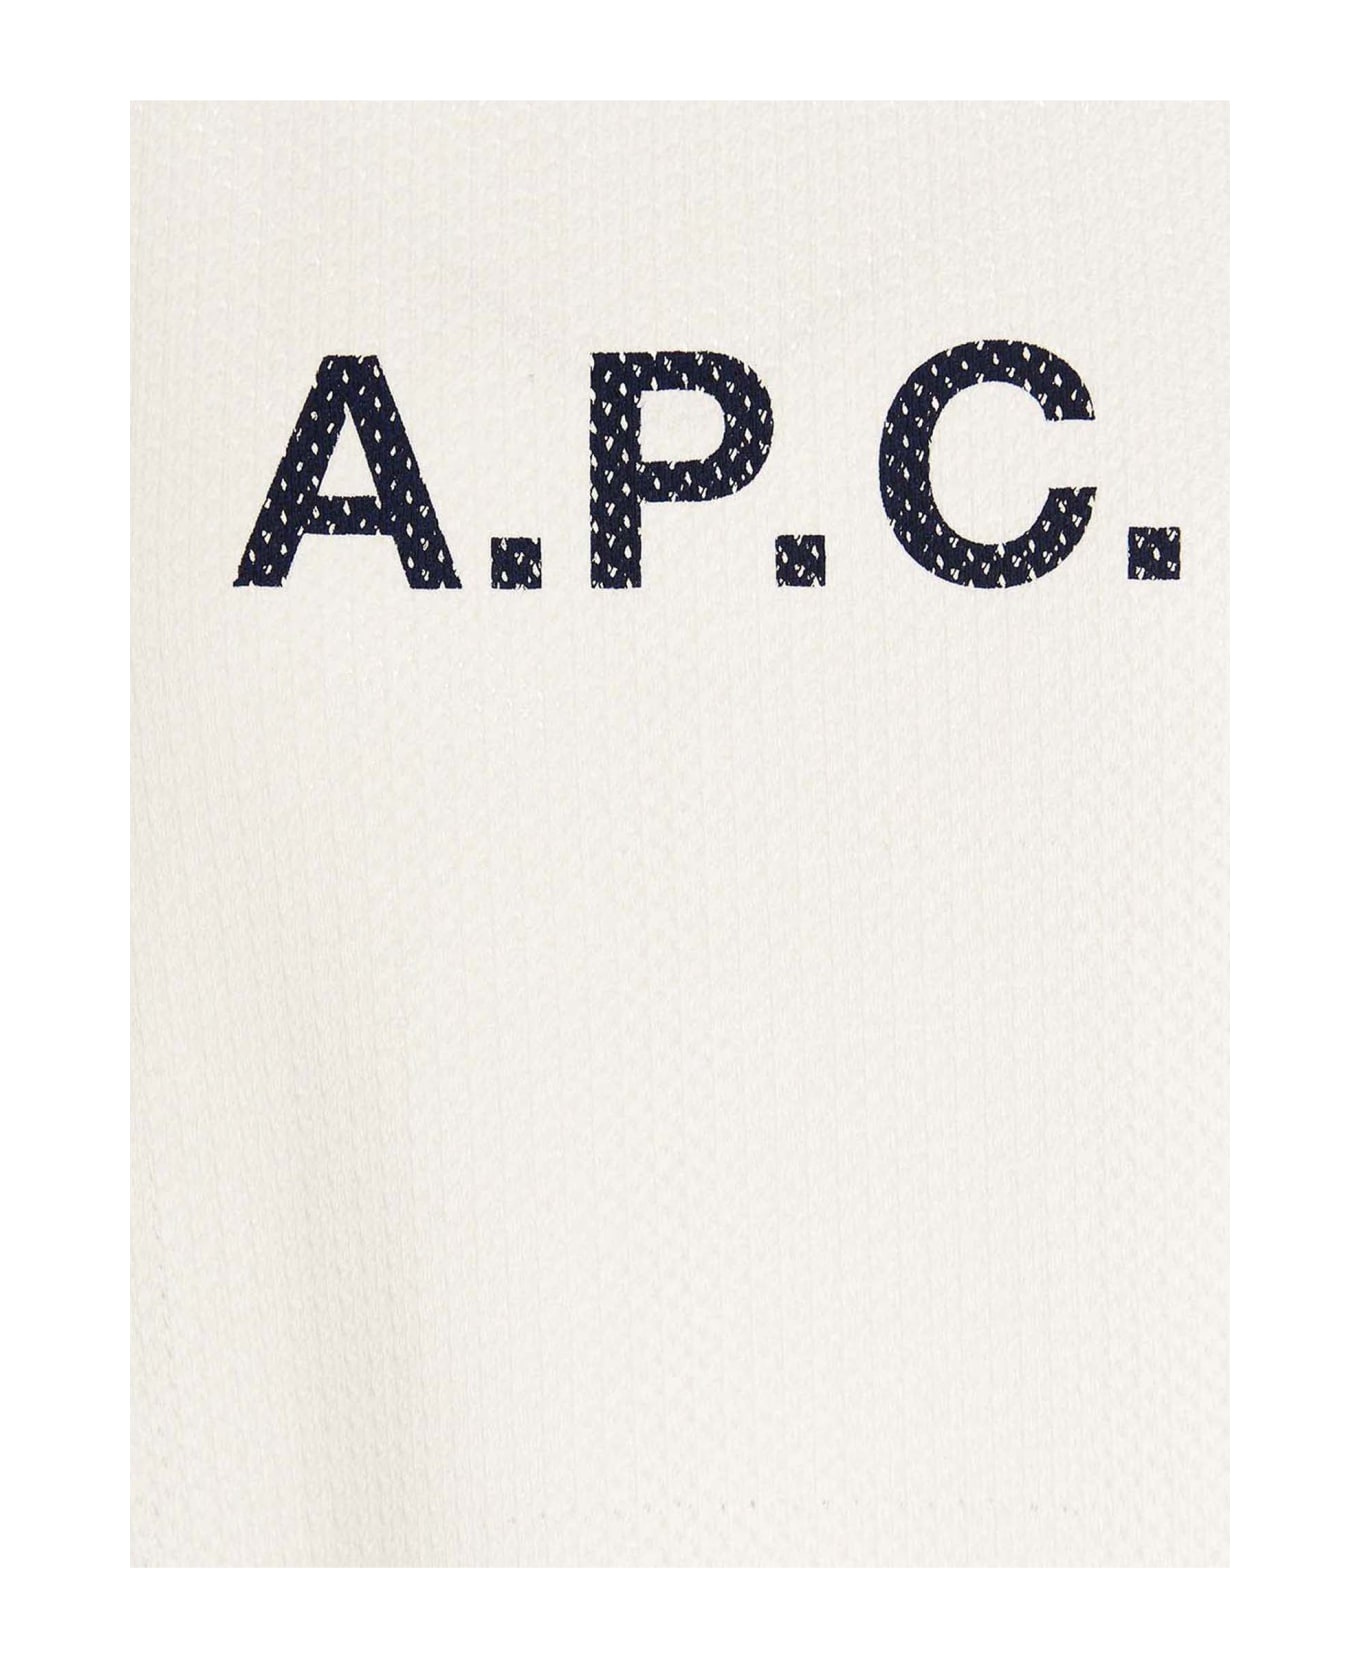 A.P.C. Moran T-shirt - Aad Ecru Tシャツ